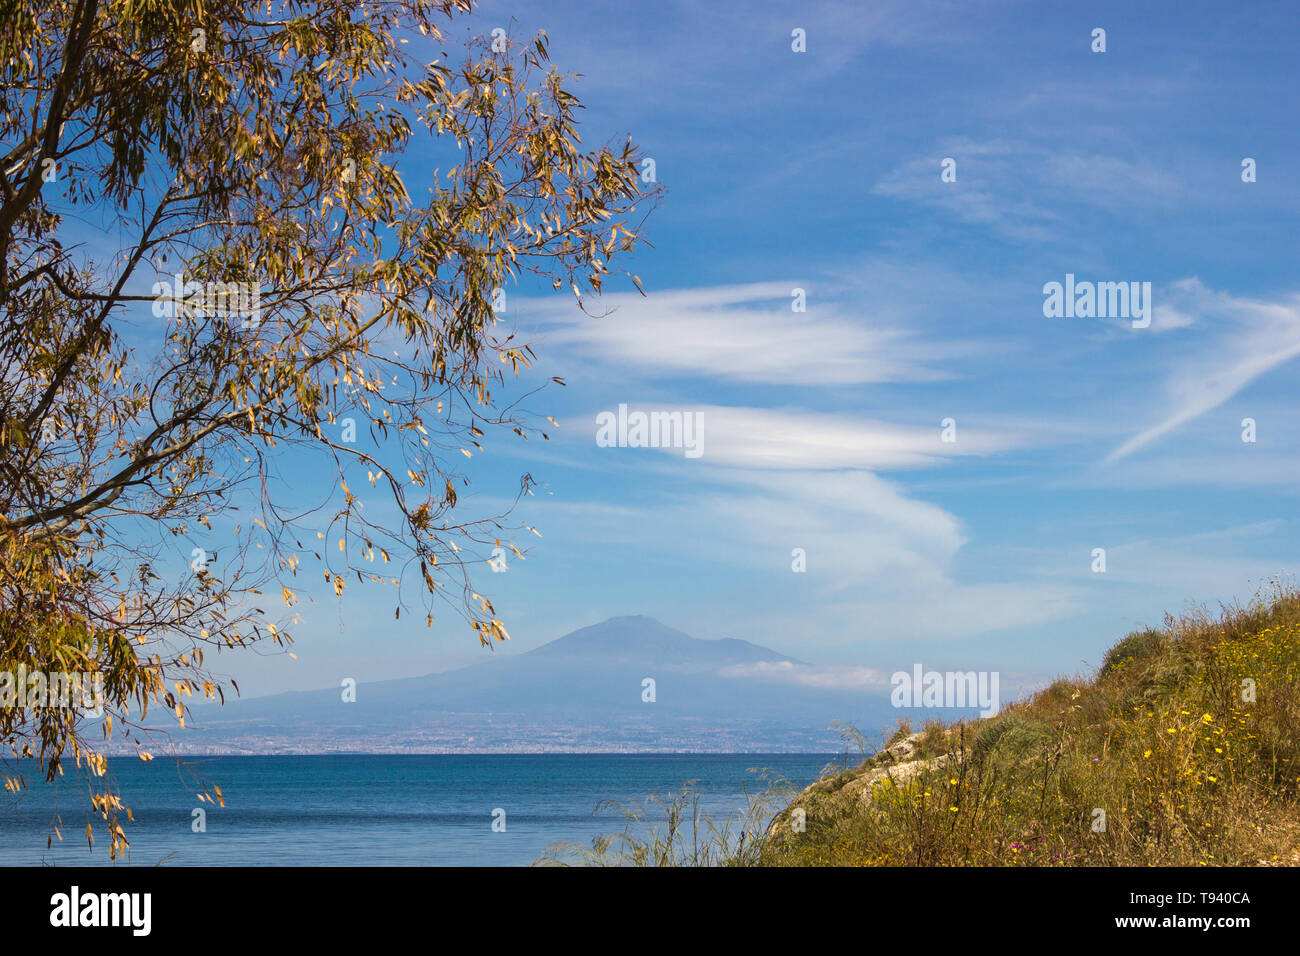 Brucoli vista del paesaggio marino in un telaio con un albero ed erba a parte e il blu del mare e del cielo con l'Etna in background Foto Stock